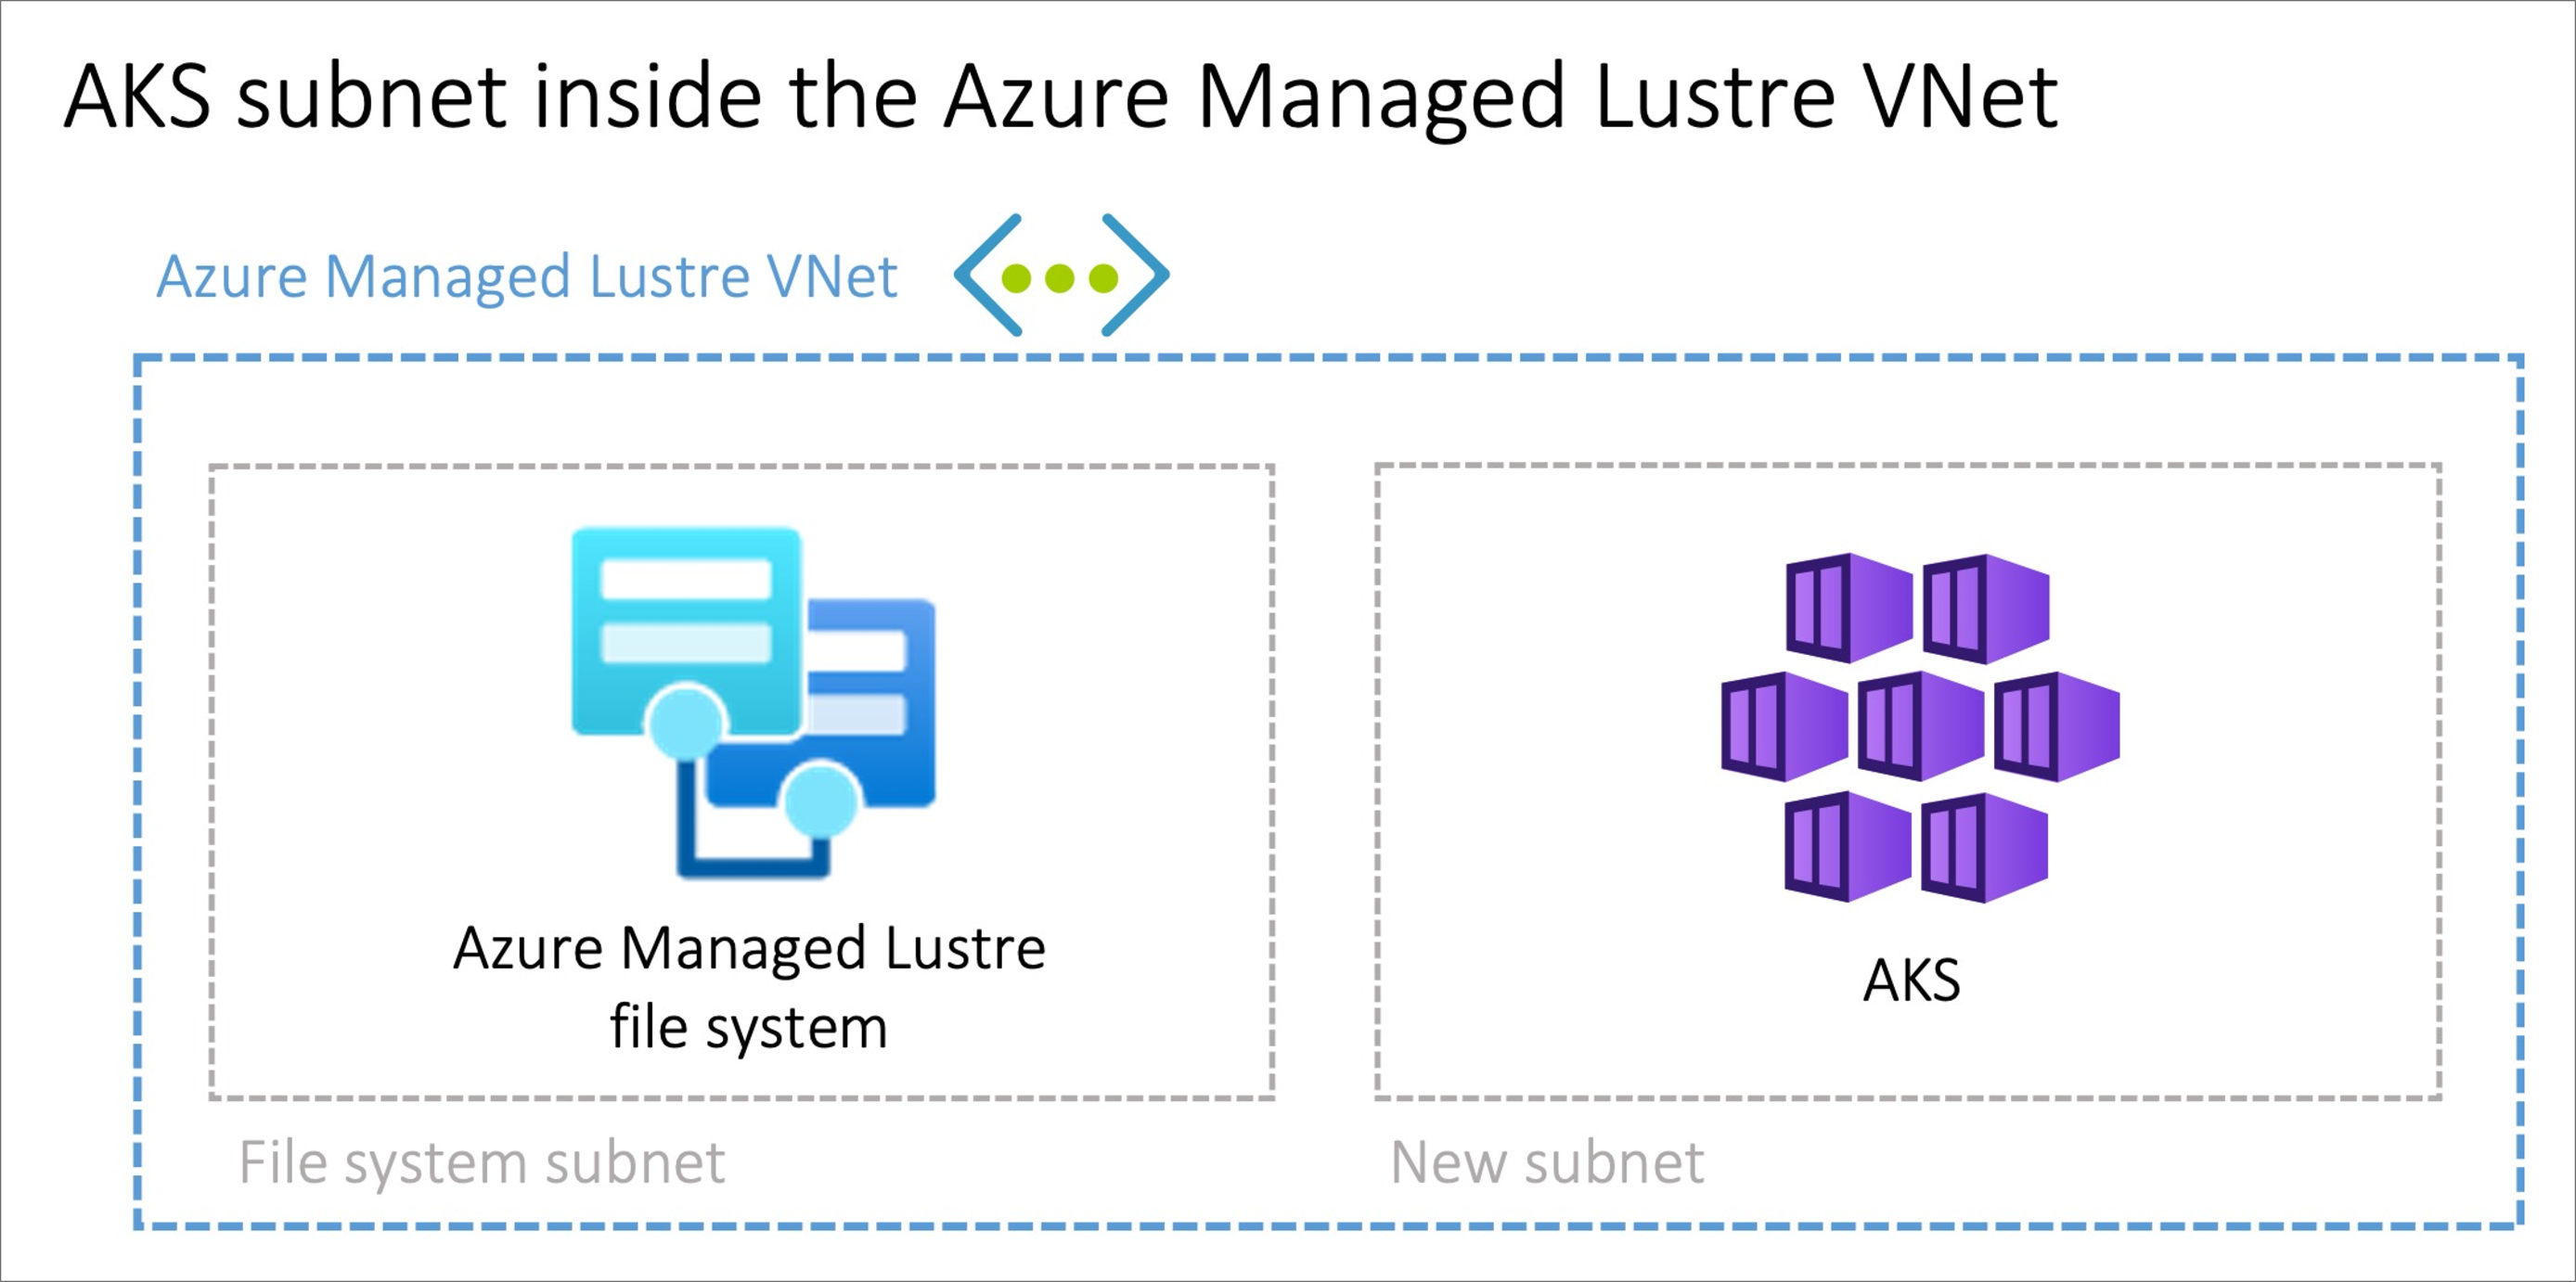 2 つのサブネットを持つ Azure Managed Lustre VNet を示す図。1 つは Lustre ファイル システム用、もう 1 つは AKS 用です。